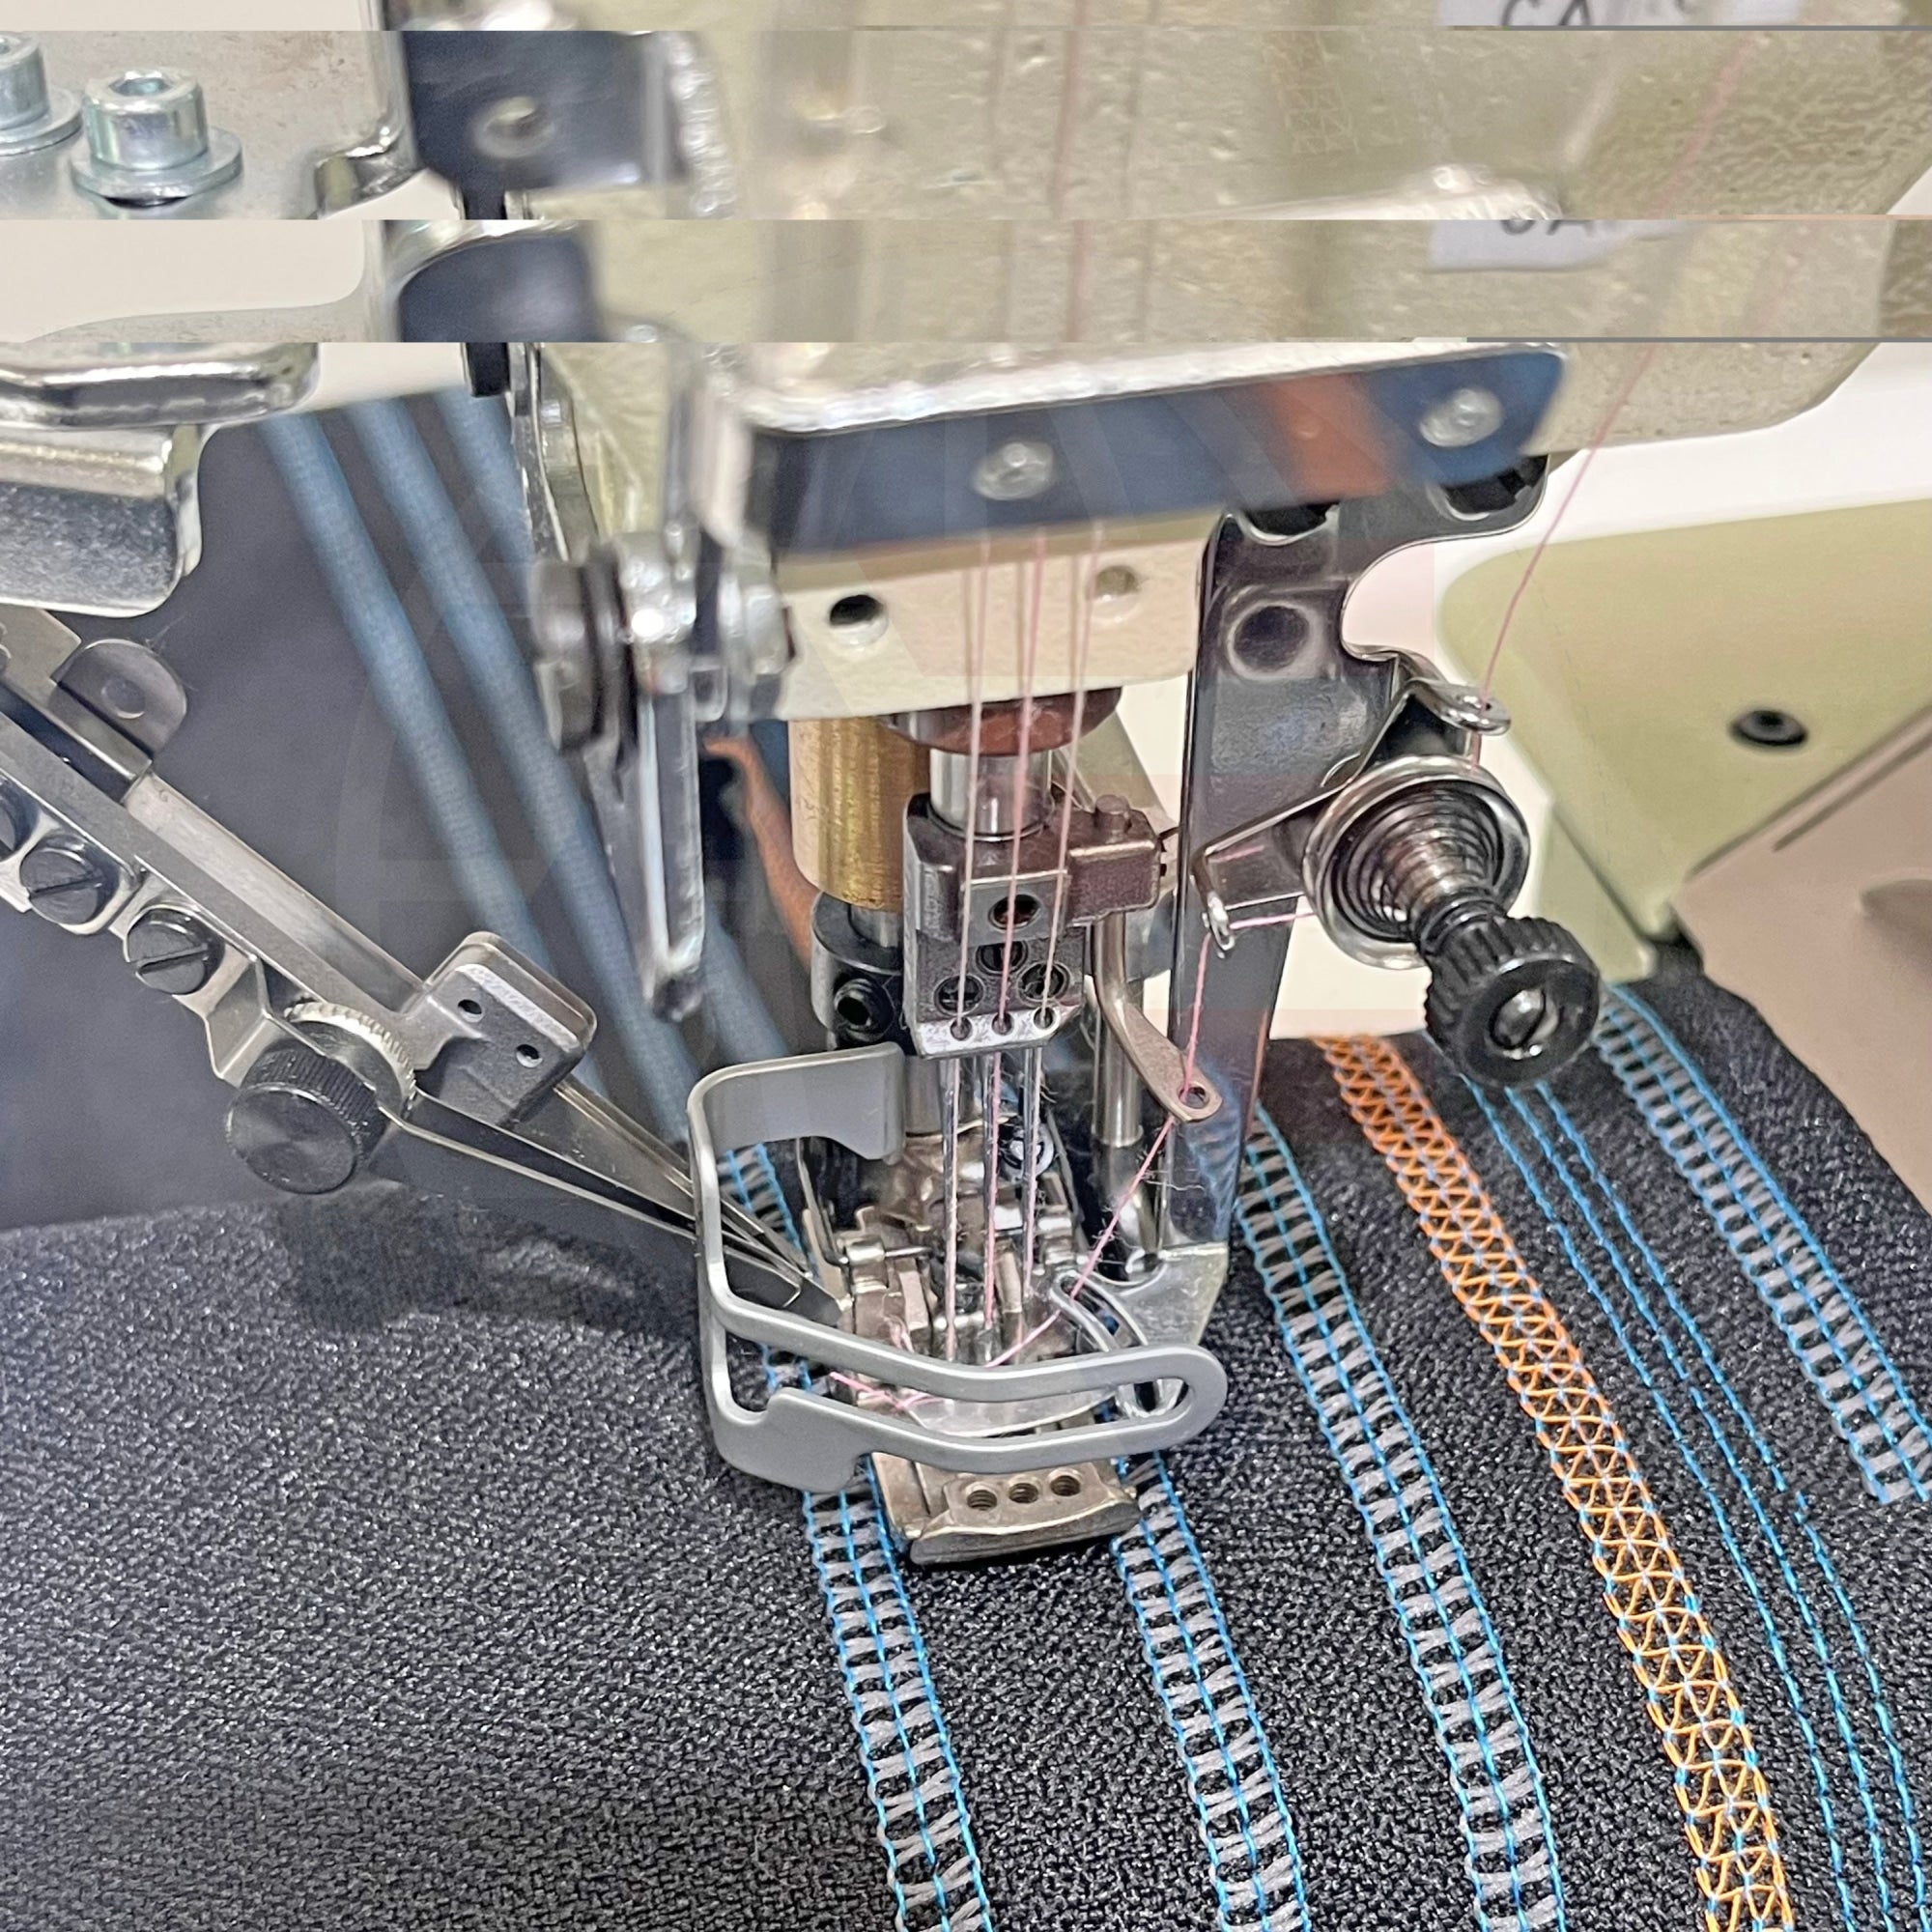 Yamato Vc-2700G Coverstitch Machine (Auto) Sewing Machines